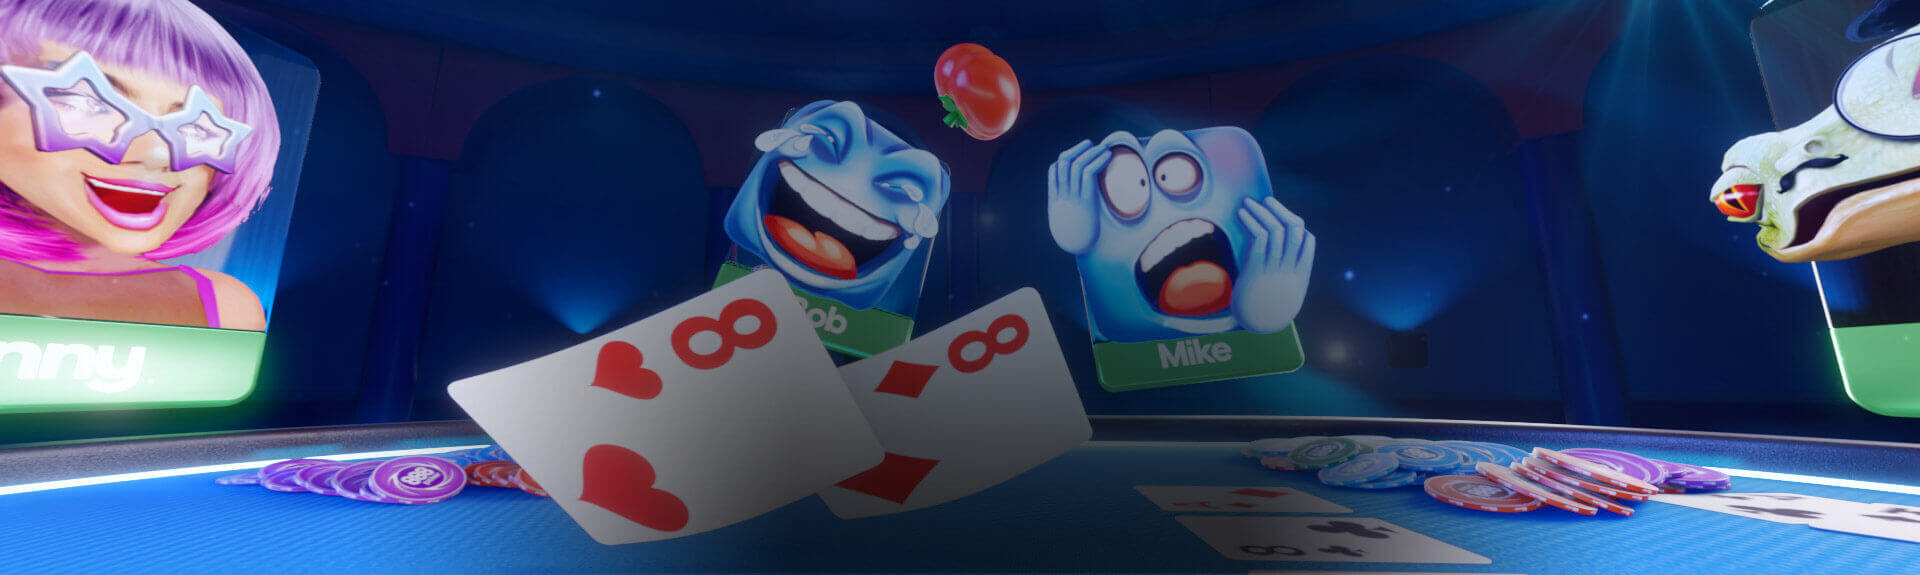 Nejlepších poker aplikací pro Android/iPhone